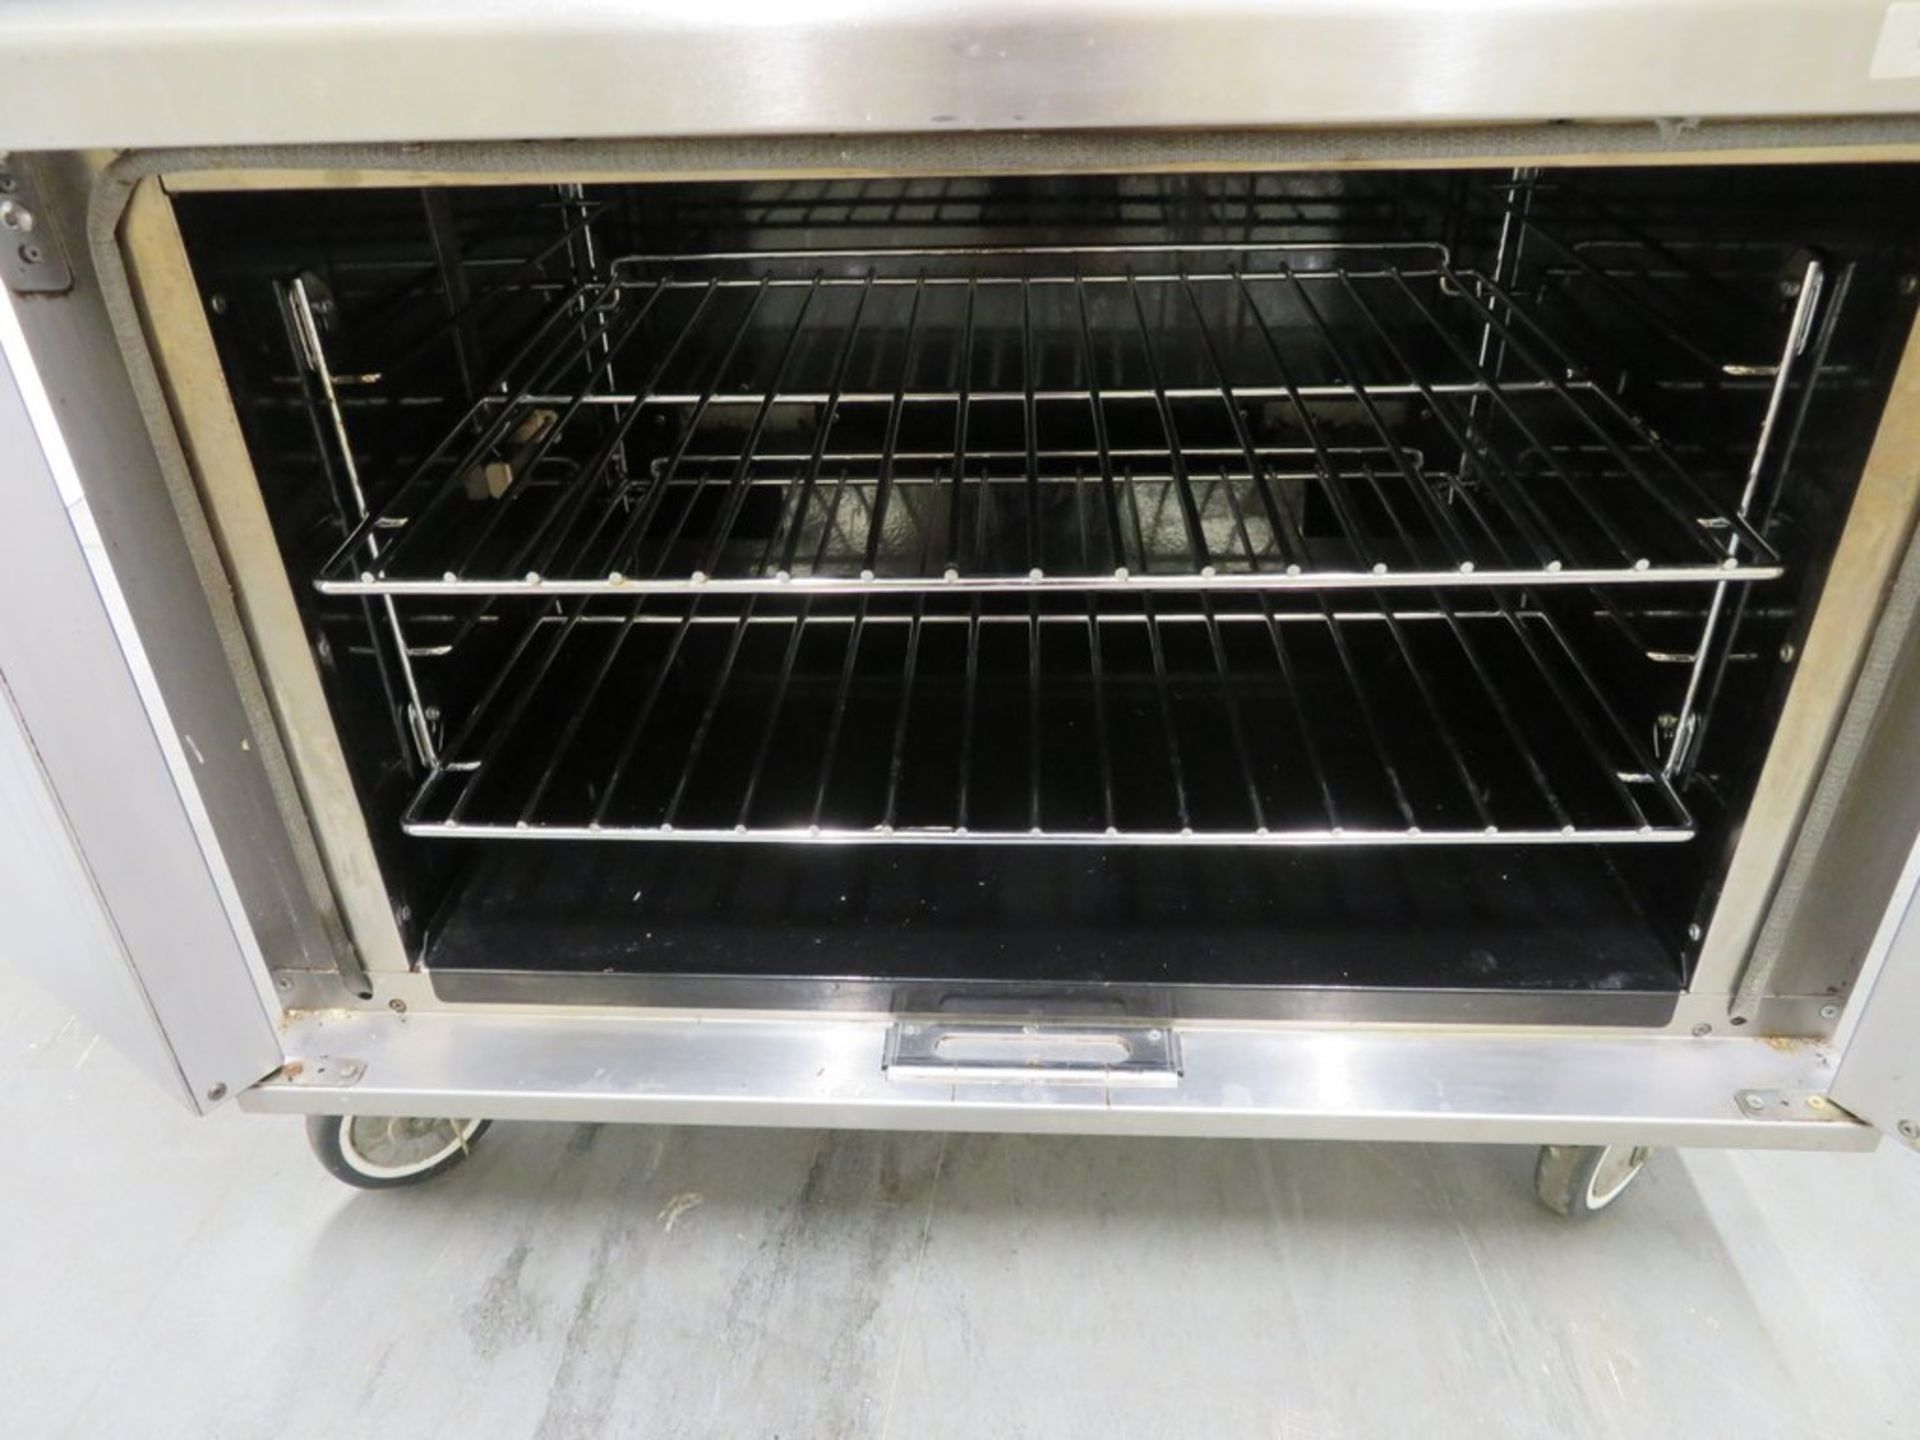 Lincat OG7002 6 burner range oven, natural gas - Image 6 of 9